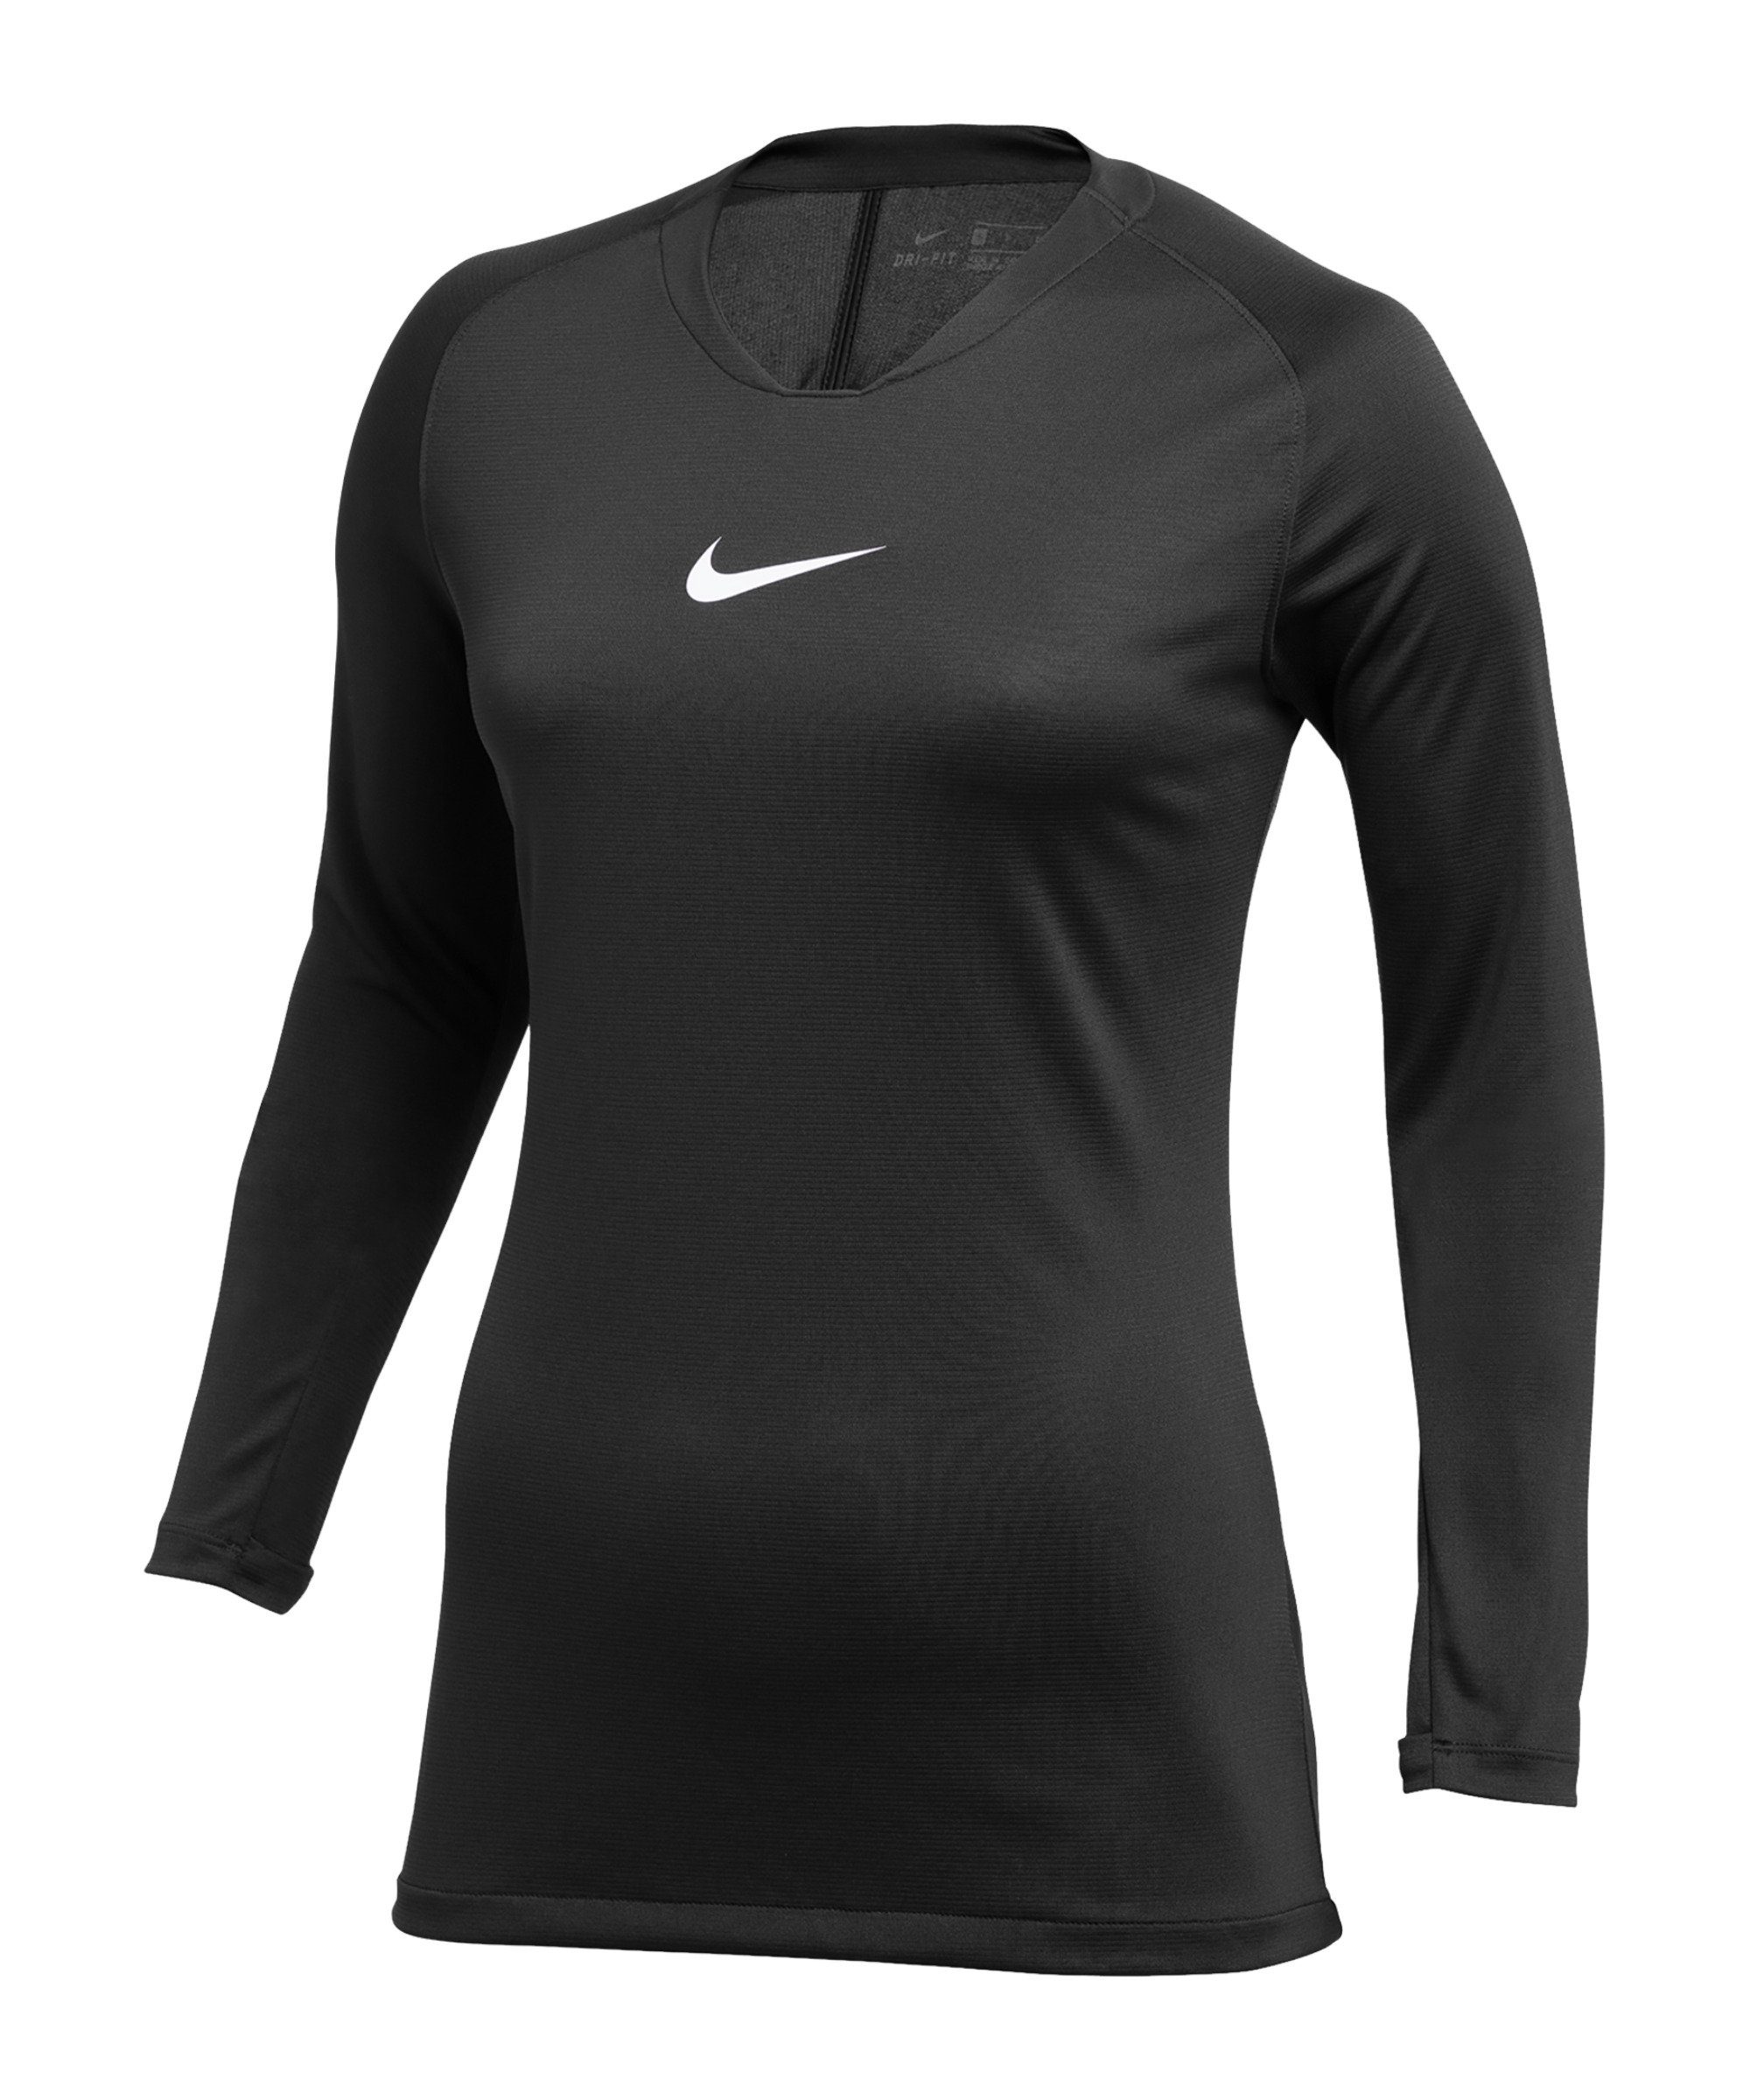 First Nike Funktionsshirt default Layer Park schwarzweiss Damen